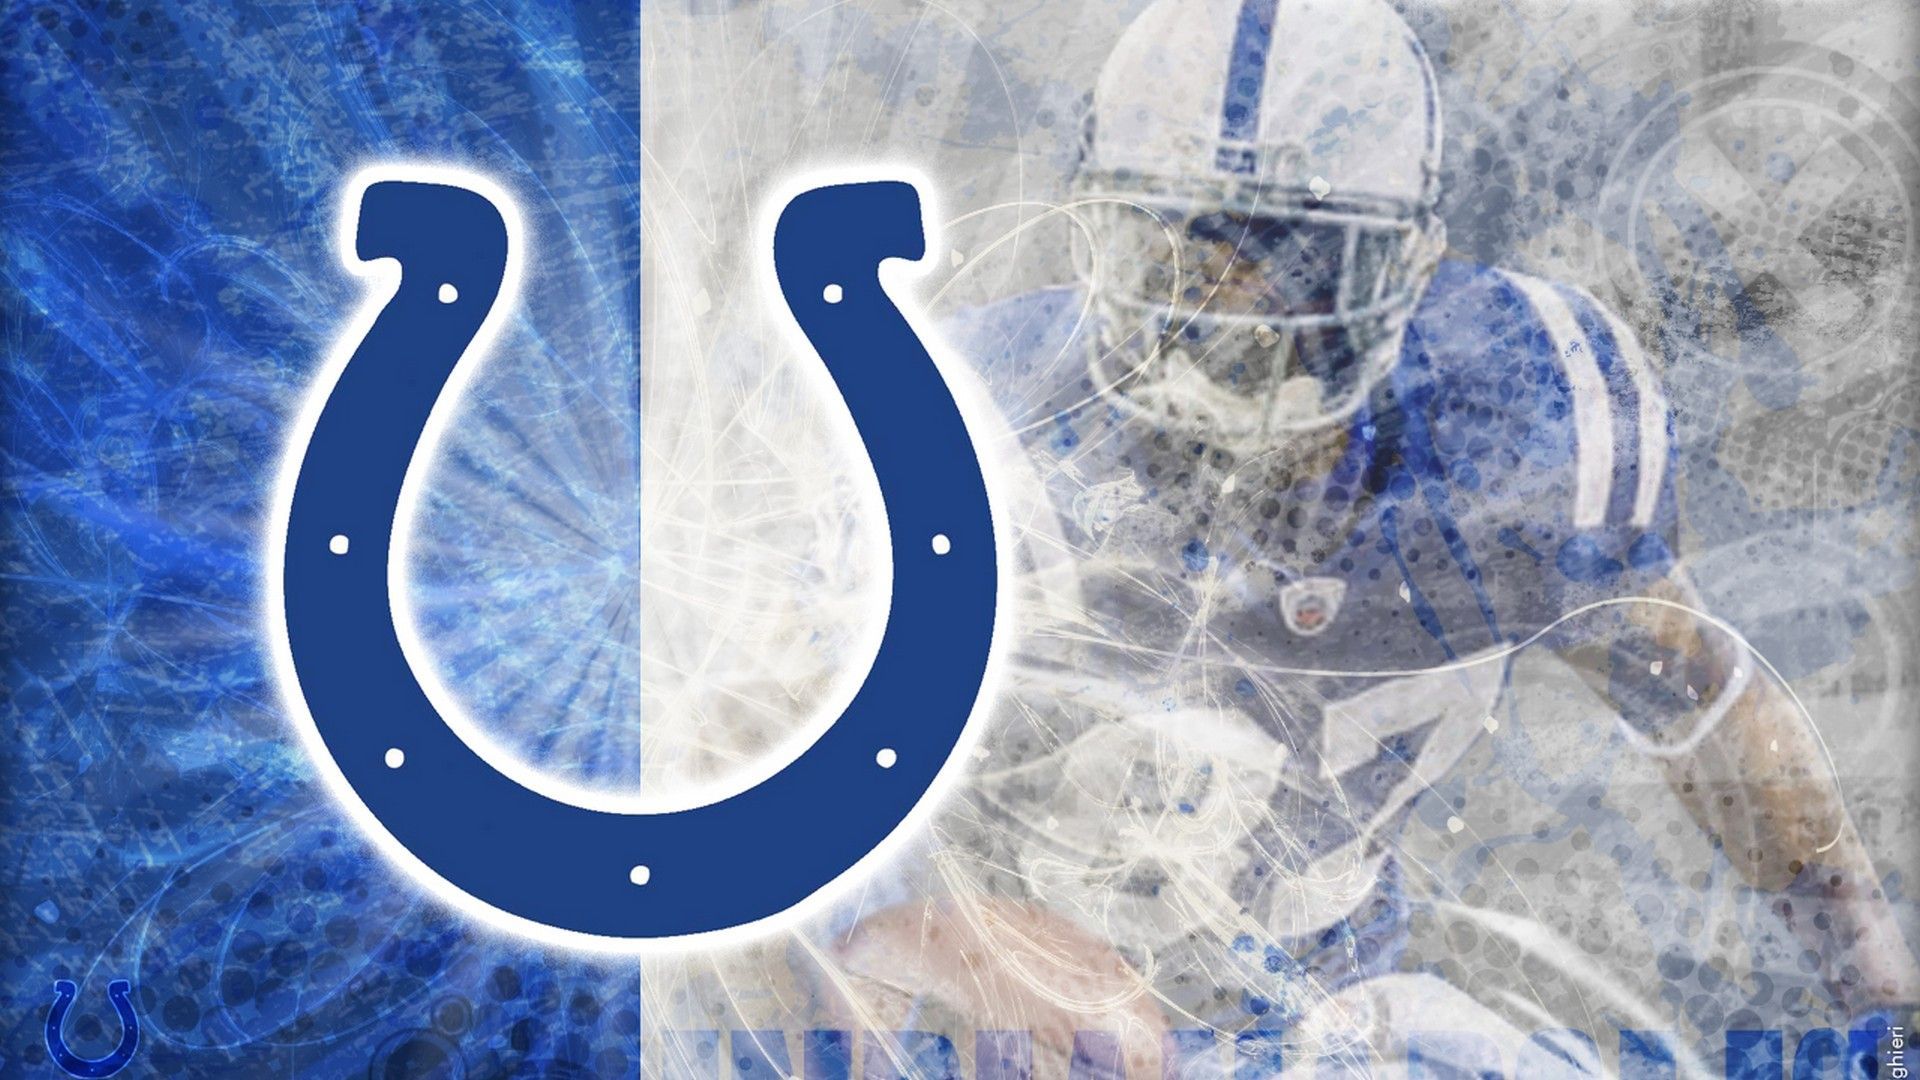 Indianapolis Colts Logo Wallpaper 8k